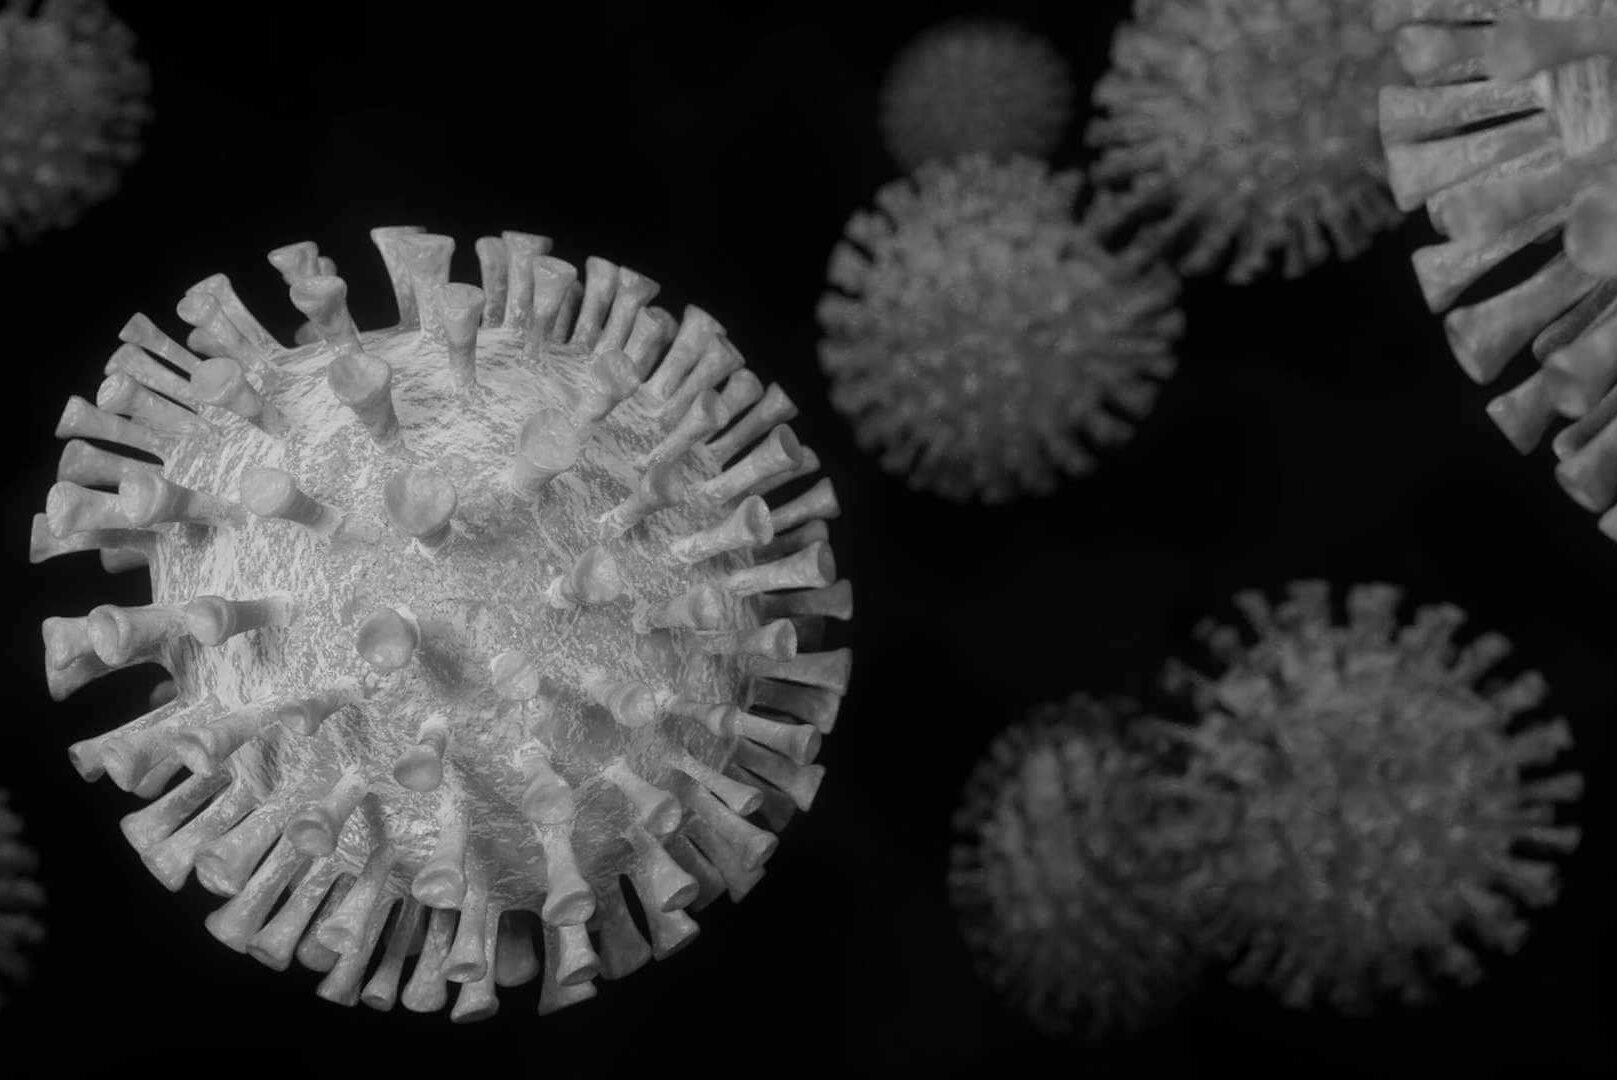 Mikroskopie des Covid-19 Virus